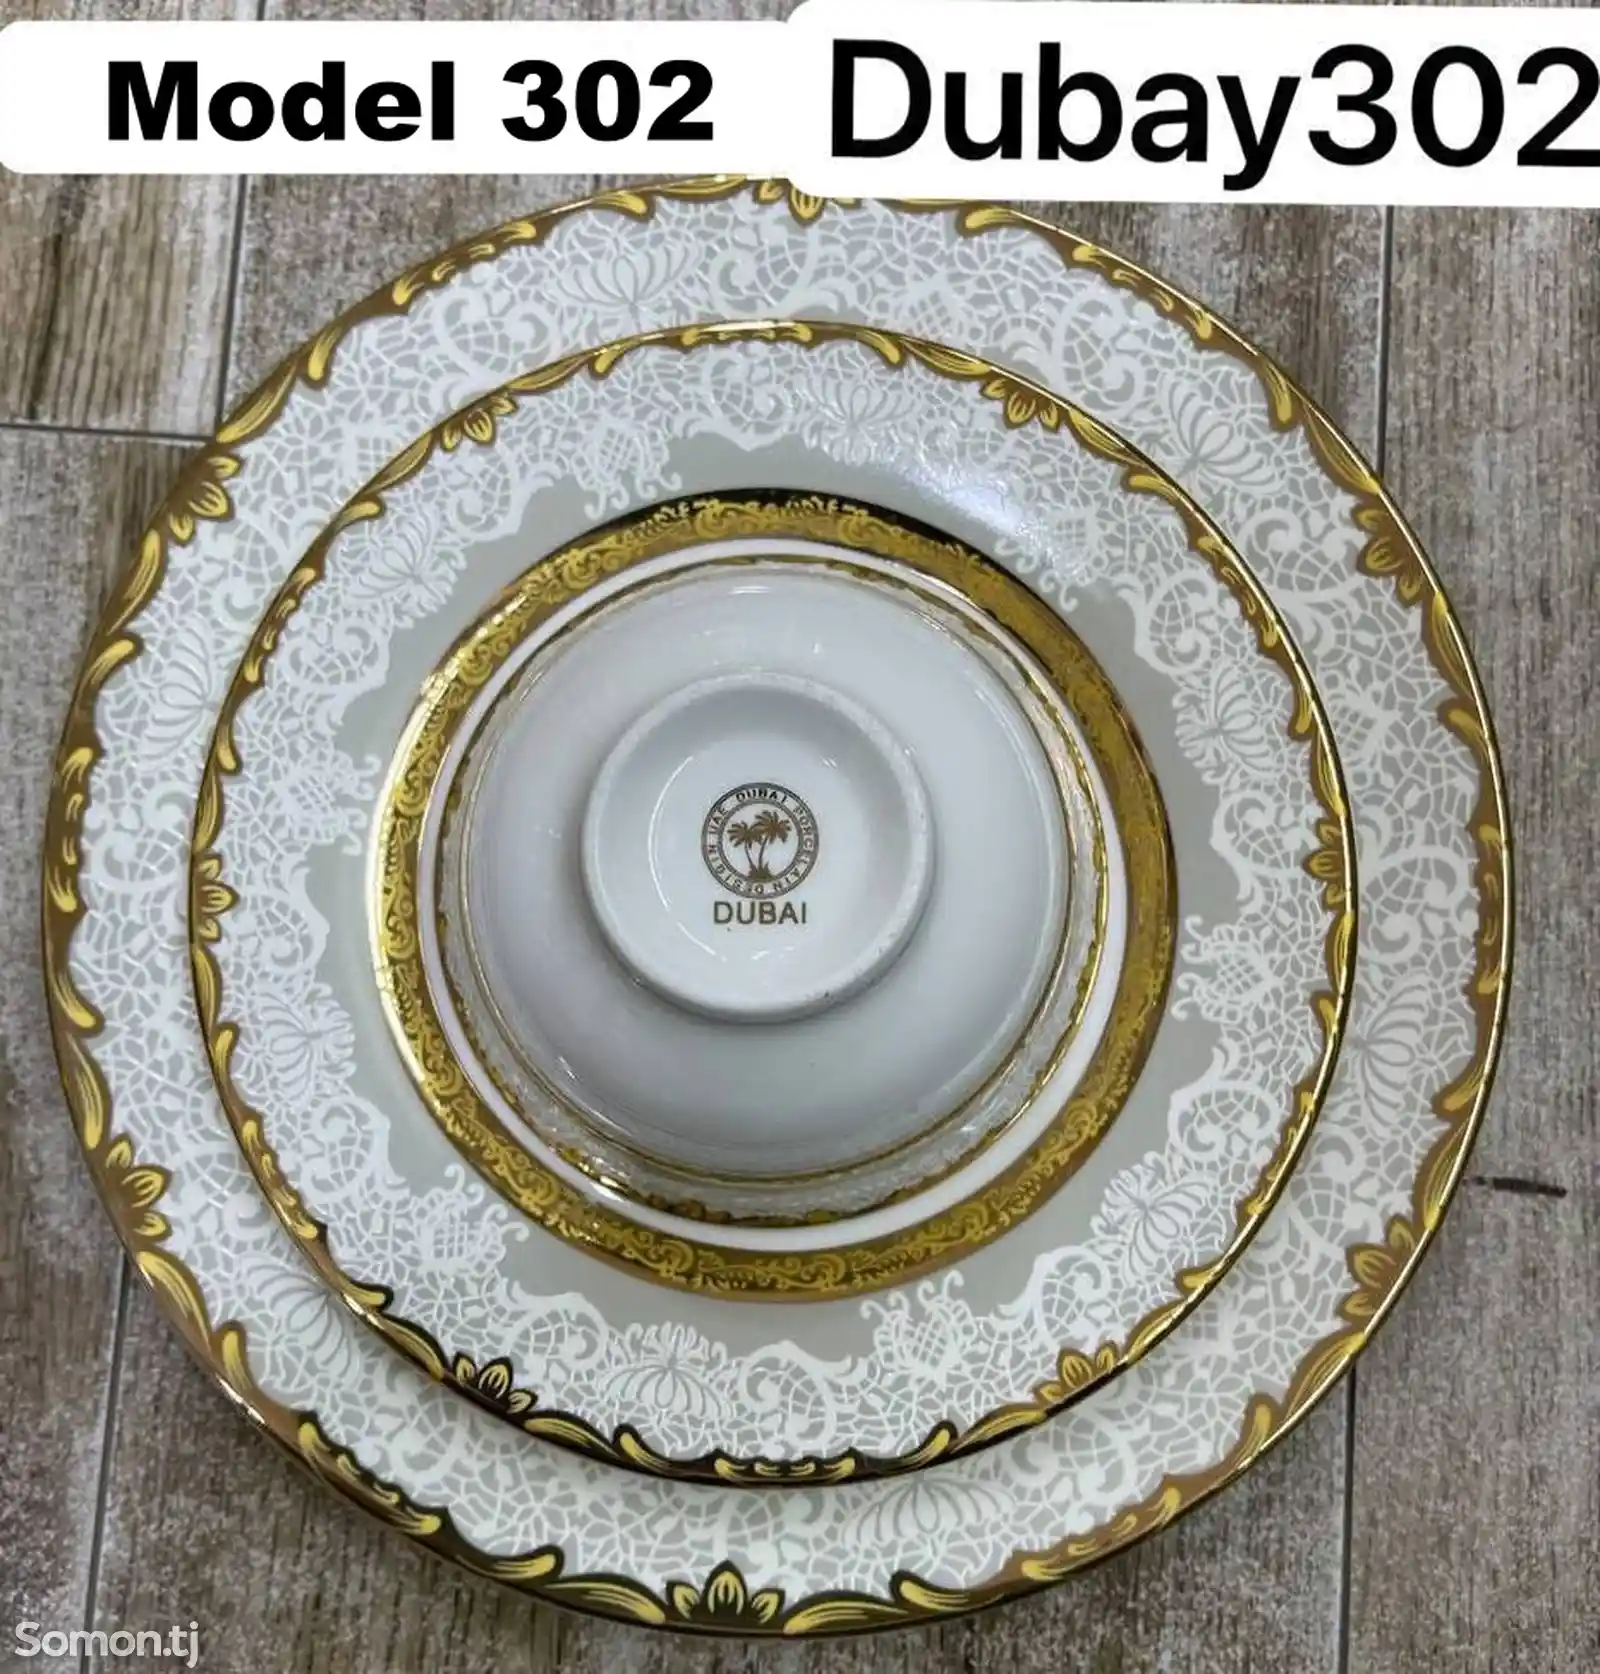 Набор посуды Dubay-302 комплект 6-7